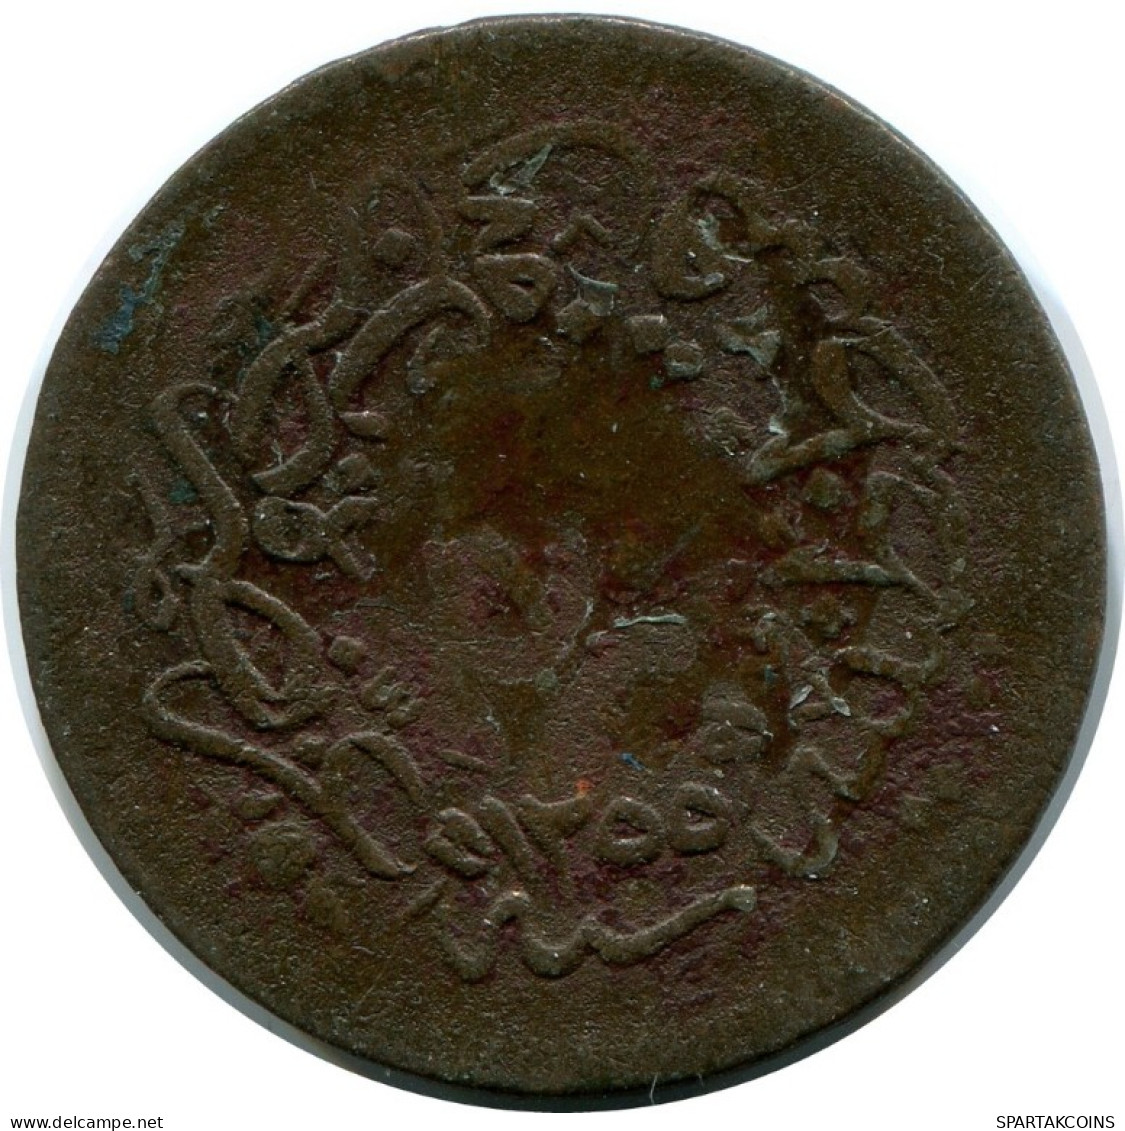 10 PARA 1857 OTTOMAN EMPIRE Islamic Coin #AK233.U.A - Omán